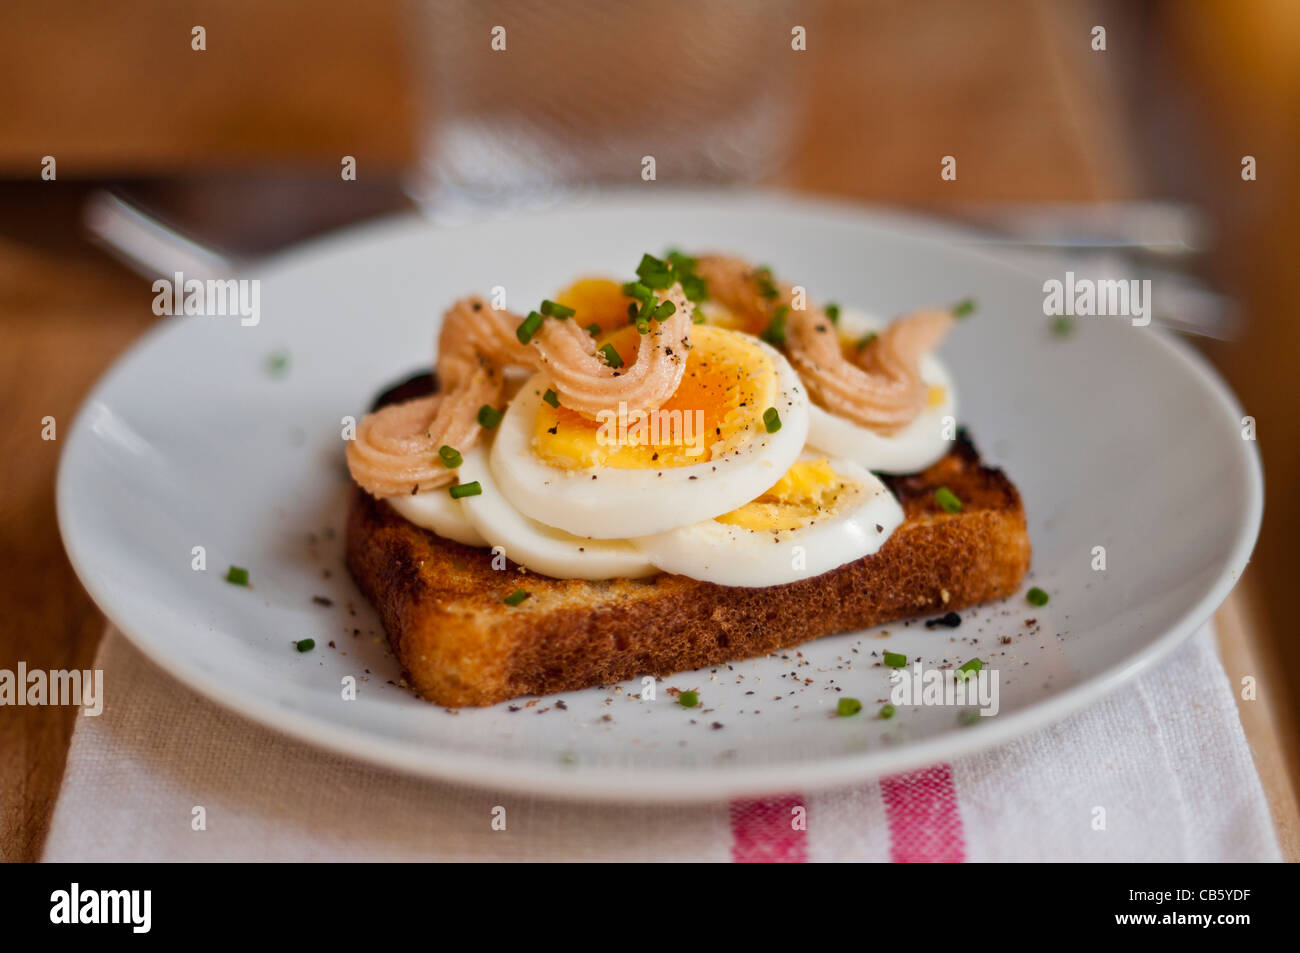 Klassische schwedische öffnen konfrontiert Sandwich aus geschnittenem gekochtem Ei garniert mit Kalles Kaviar und mit gehacktem Schnittlauch bestreut. Stockfoto